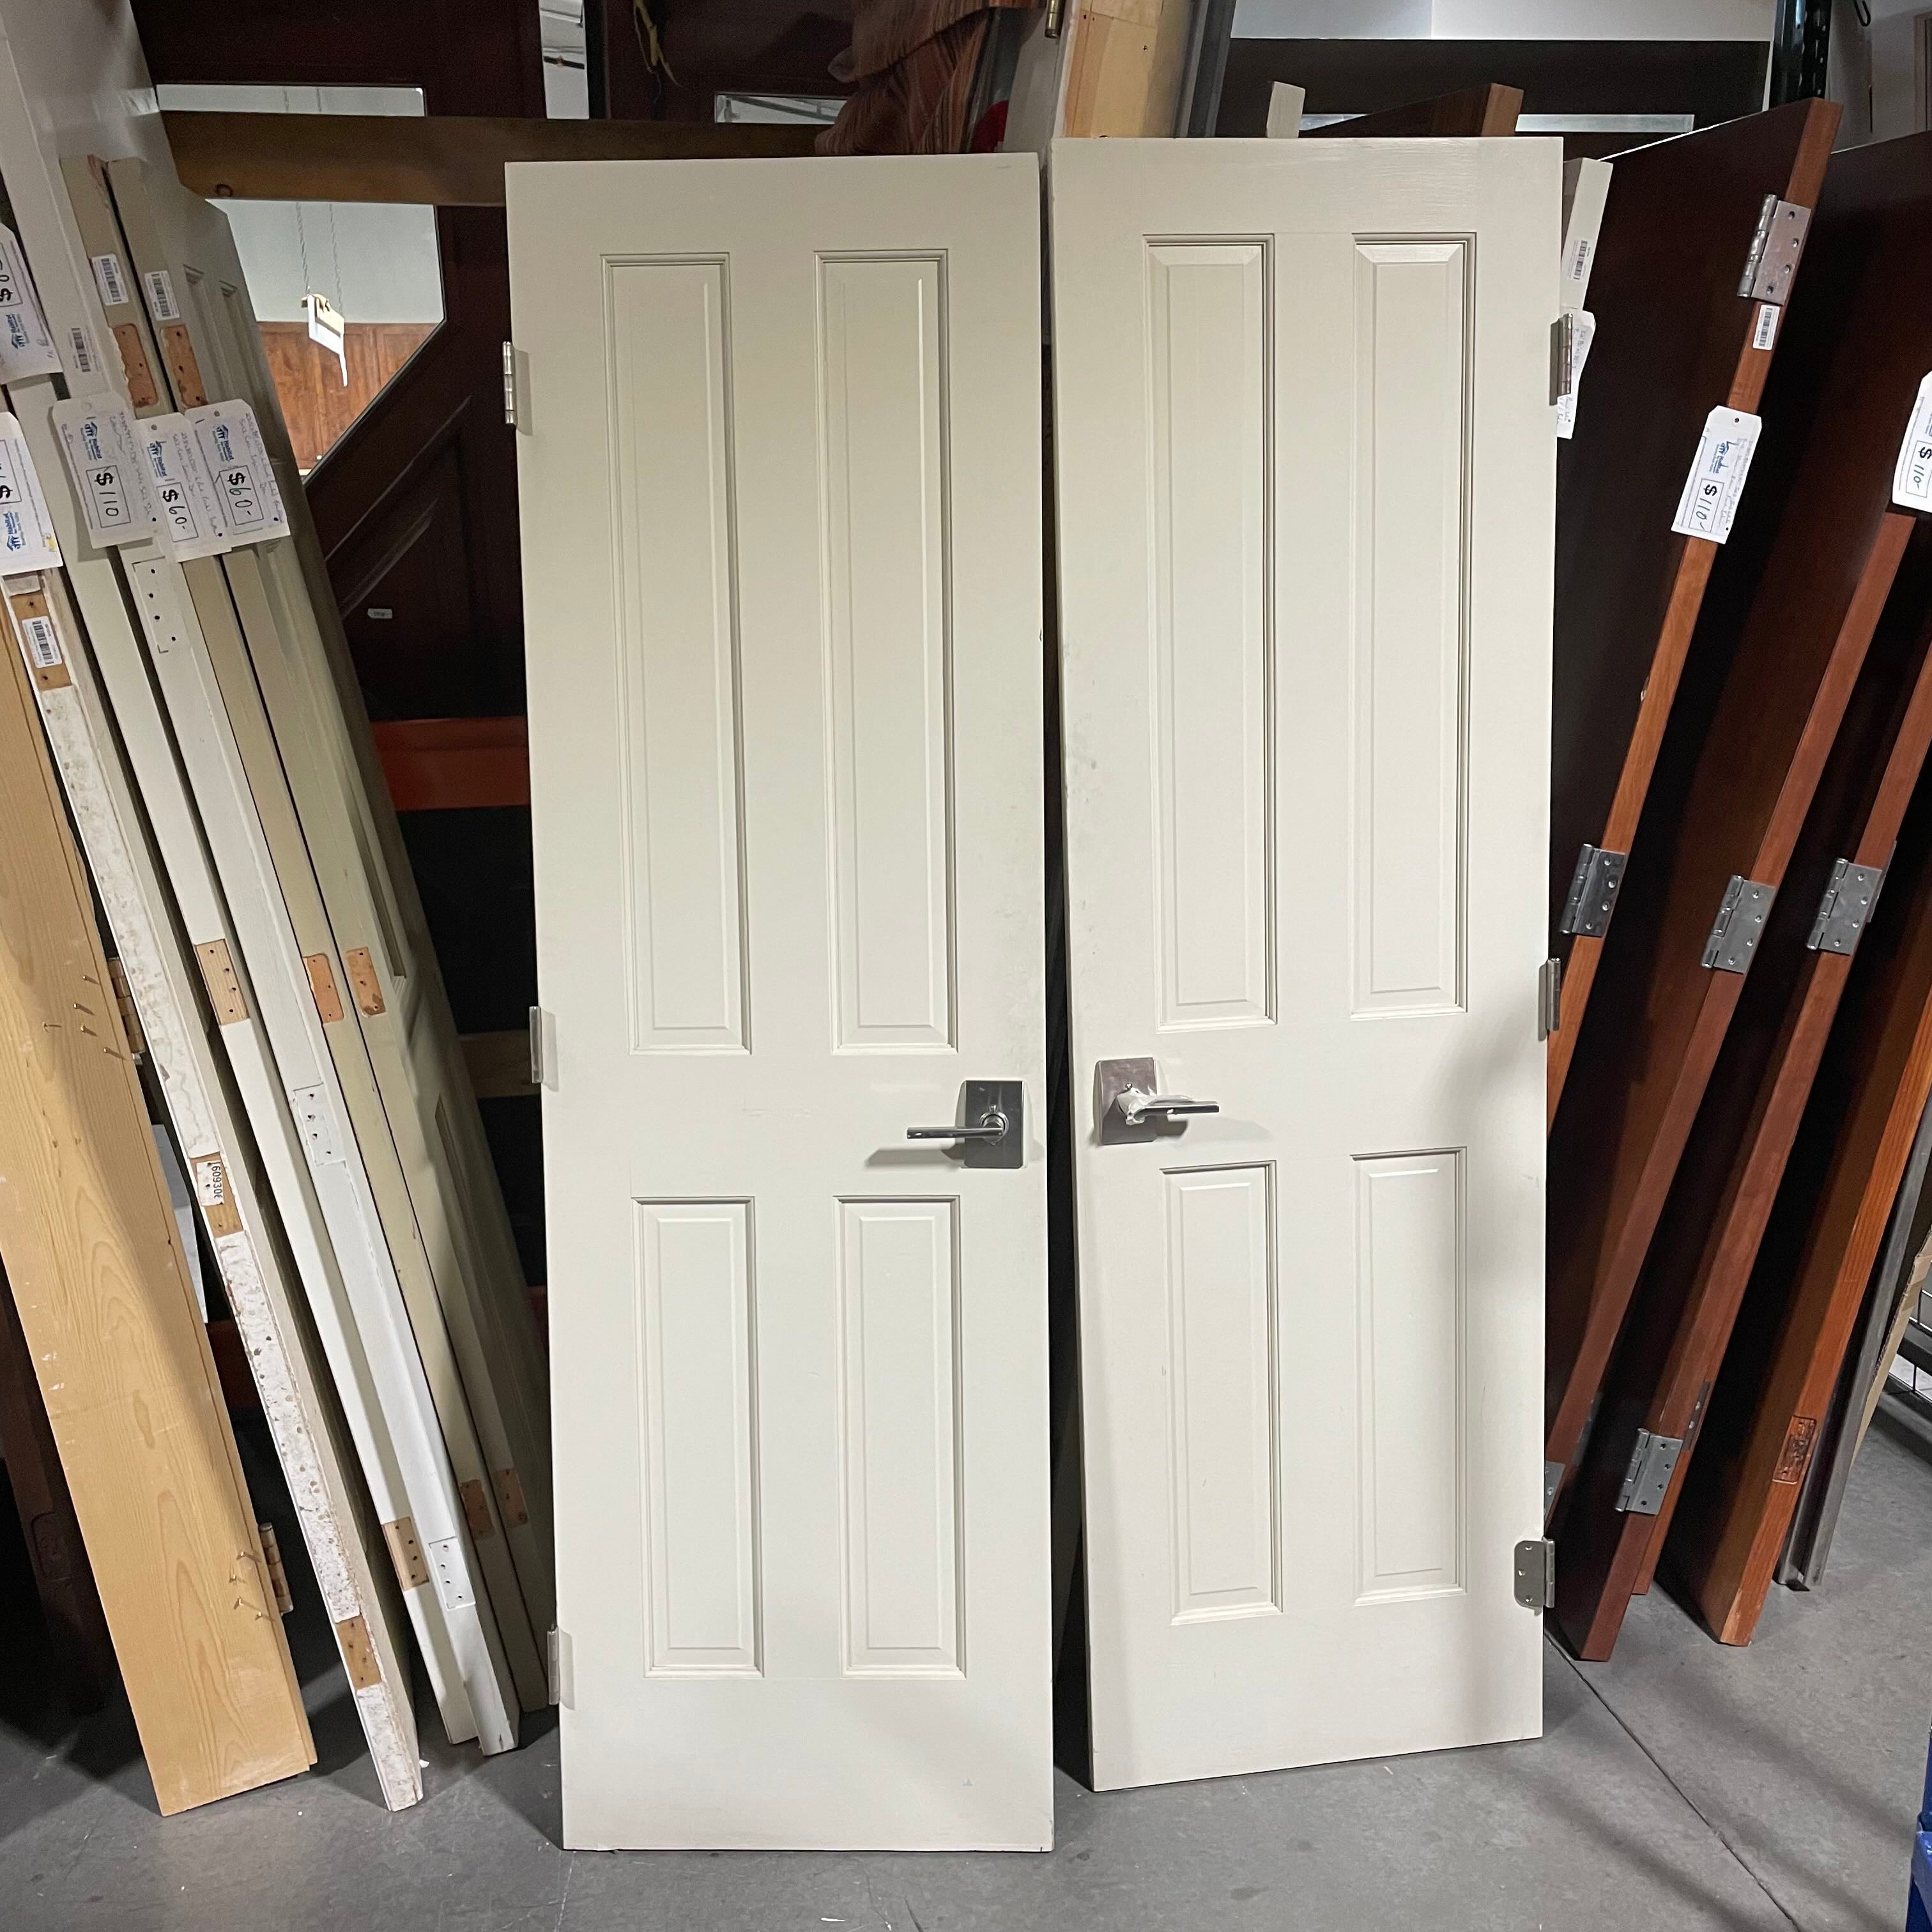 48"x 80"x 1.375" 4 Panel Painted Cream Solid Core Interior Closet Doors